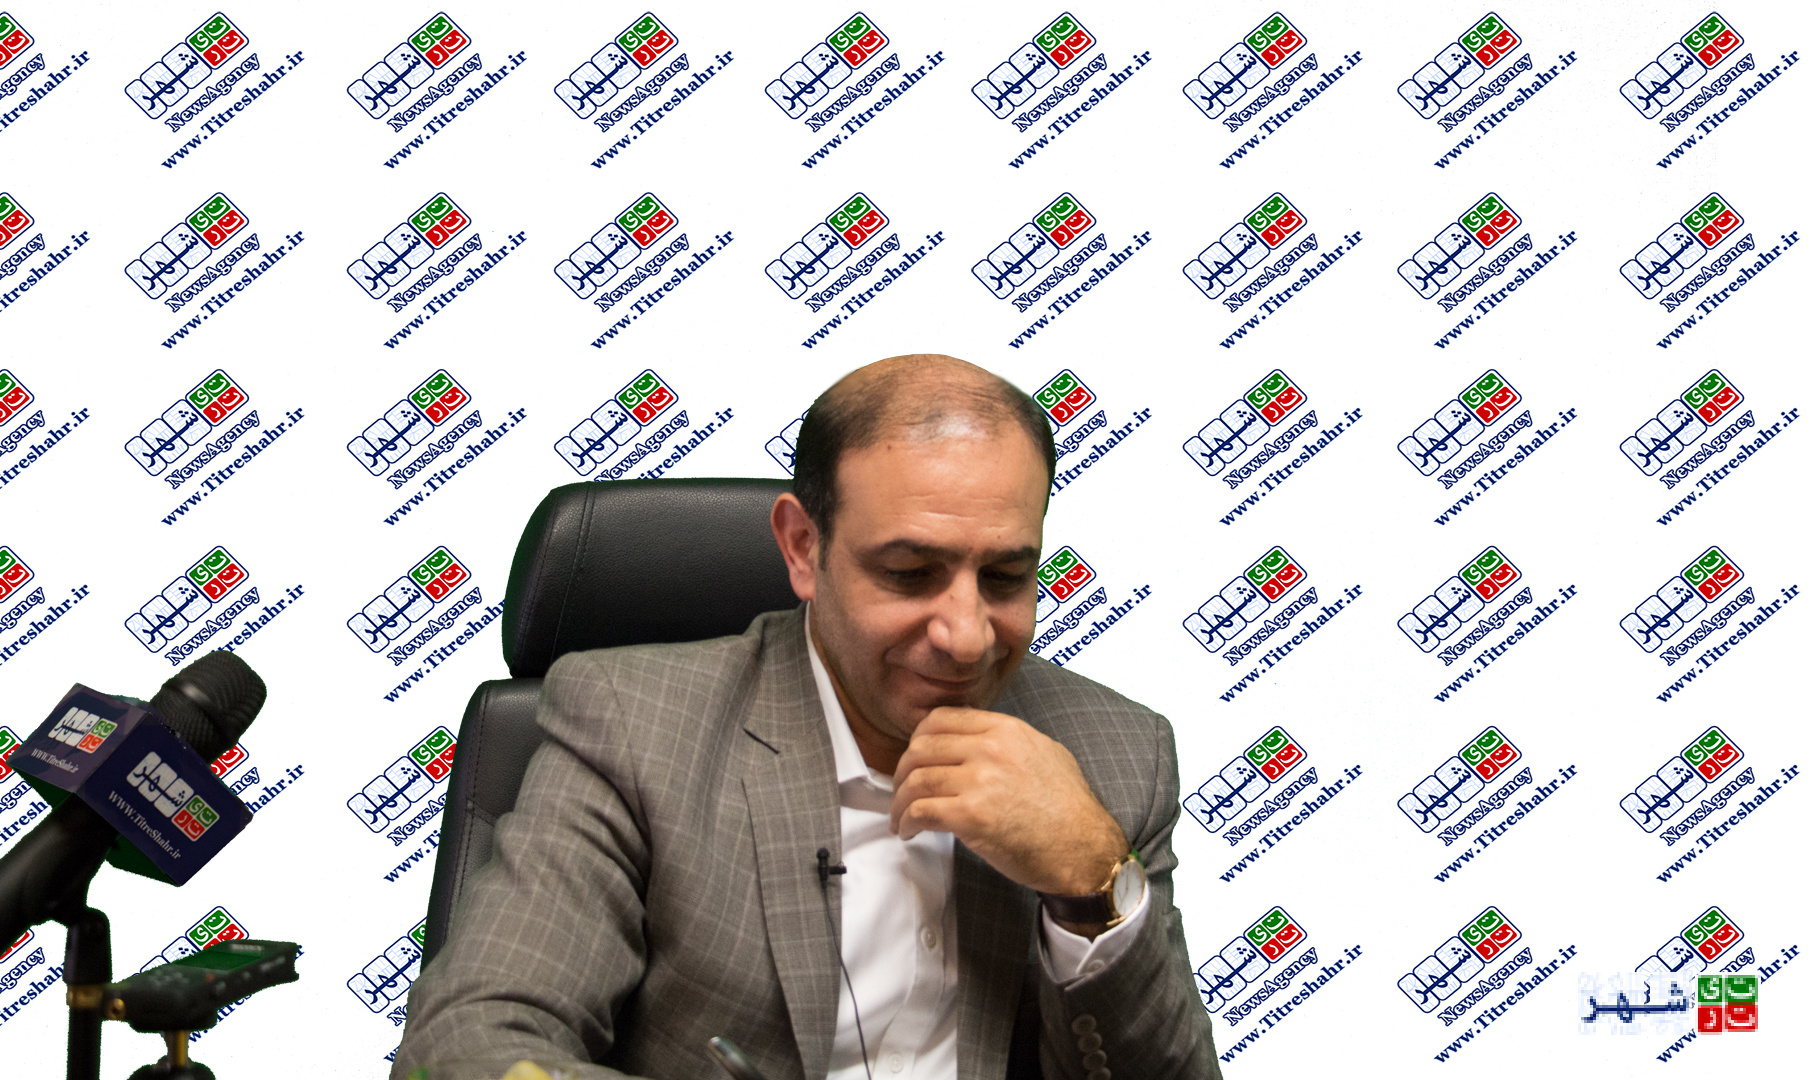 شهردار و رییس شورای تهران با اجماع انتخاب خواهند شد